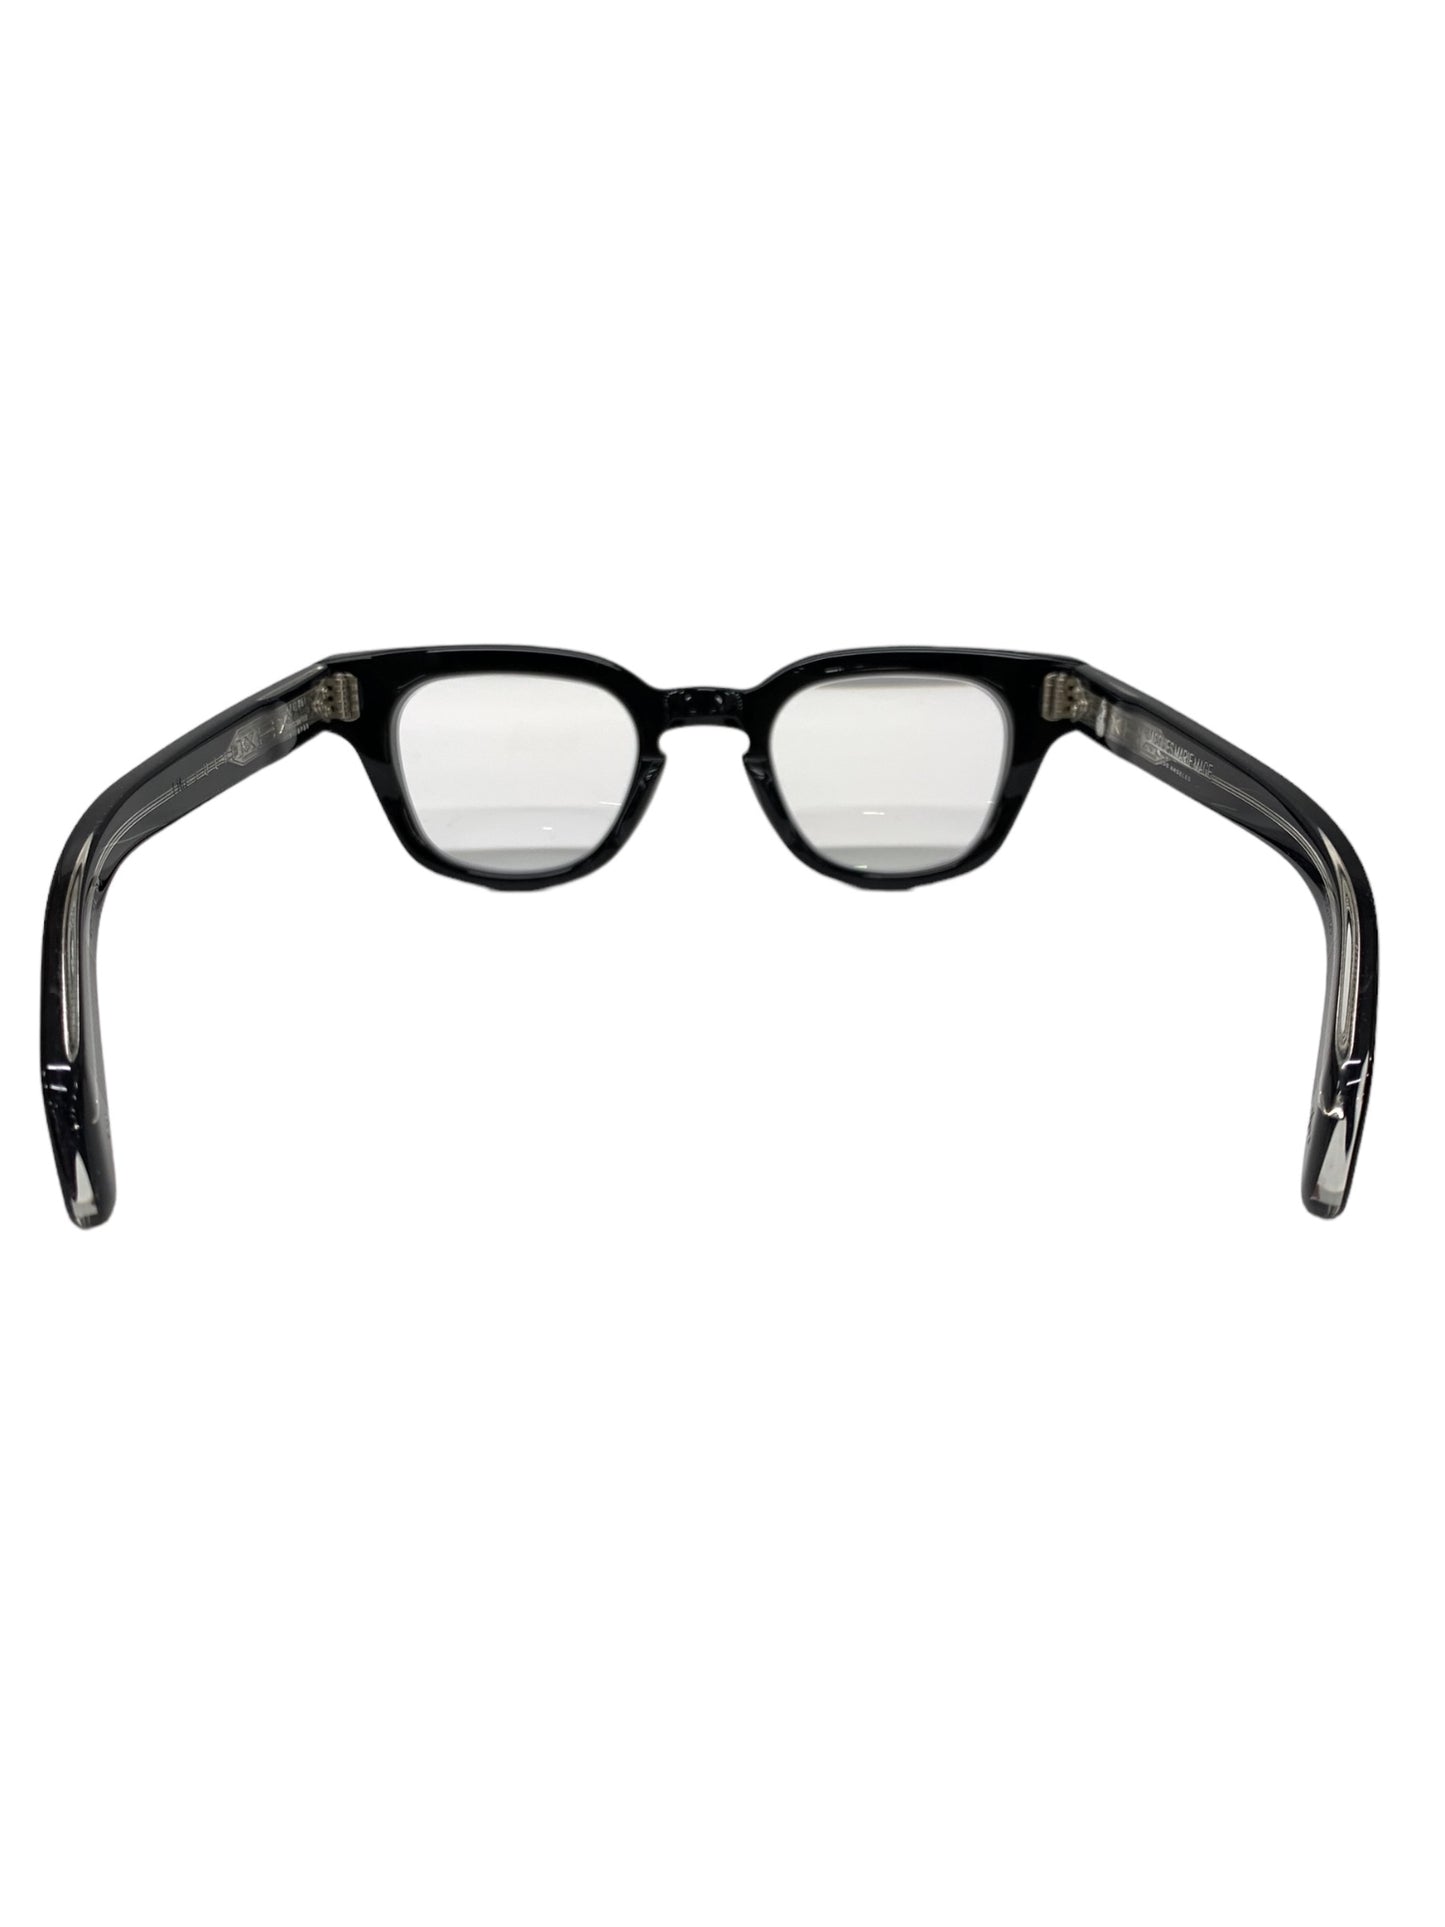 ジャックマリーマージュ JULIEN 眼鏡 ブラック 和 セルフレーム フルリム ウェリントン 世界限定450本生産 306/450 ITRH8MKCB9LU